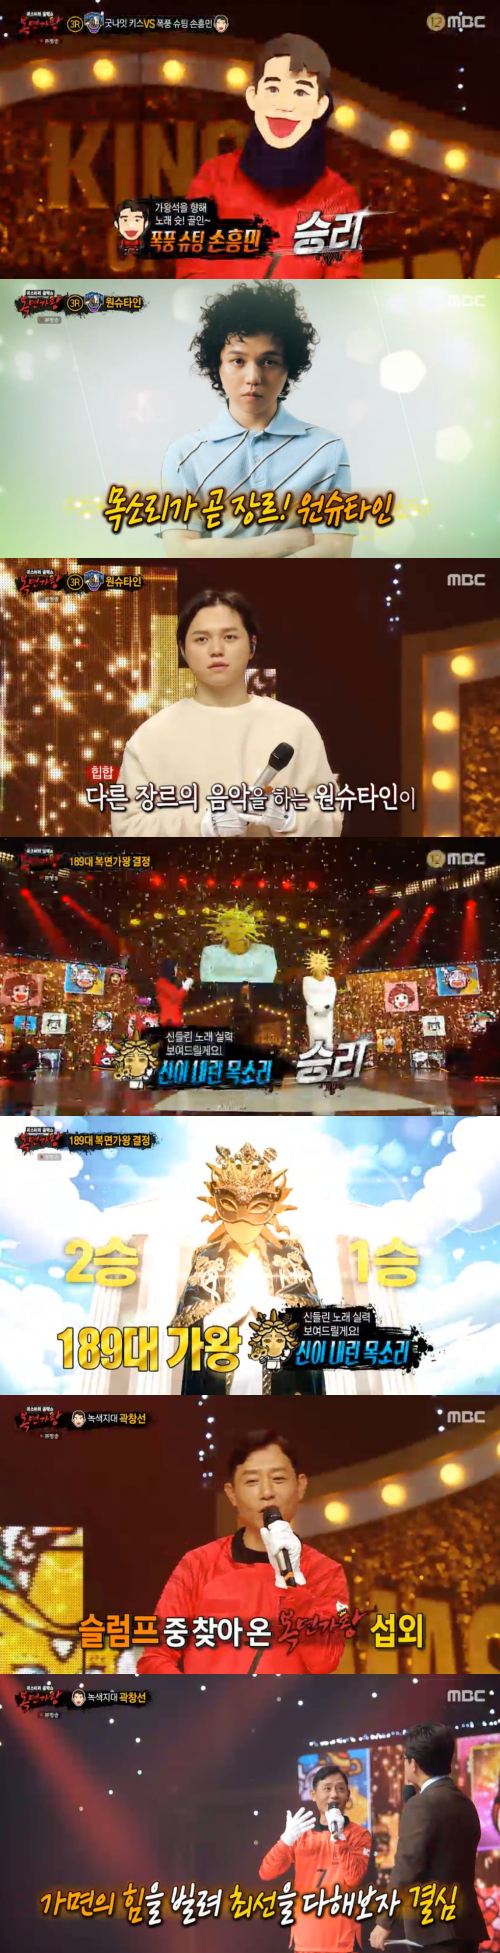 /사진=MBC 예능프로그램 '복면가왕' 방송 화면 캡쳐